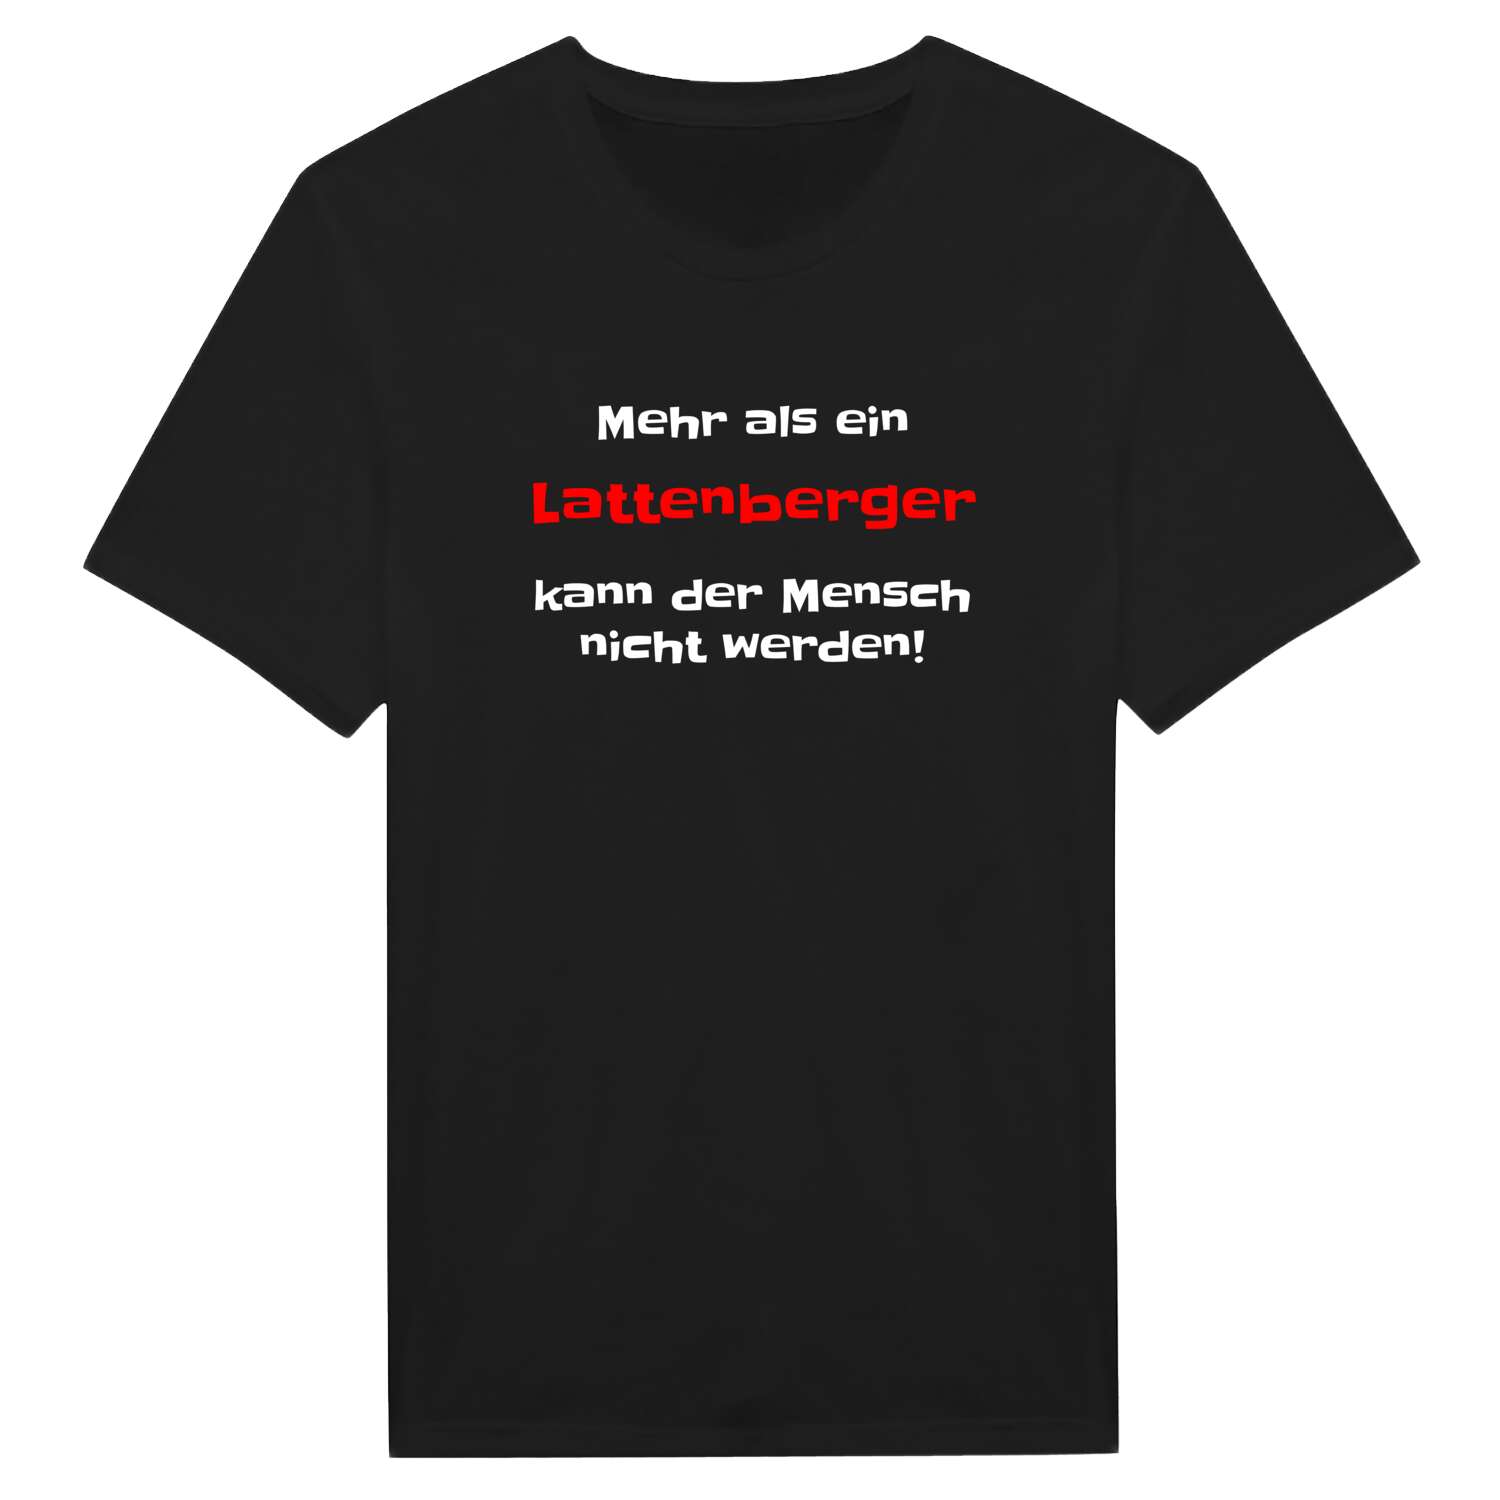 Lattenberg T-Shirt »Mehr als ein«